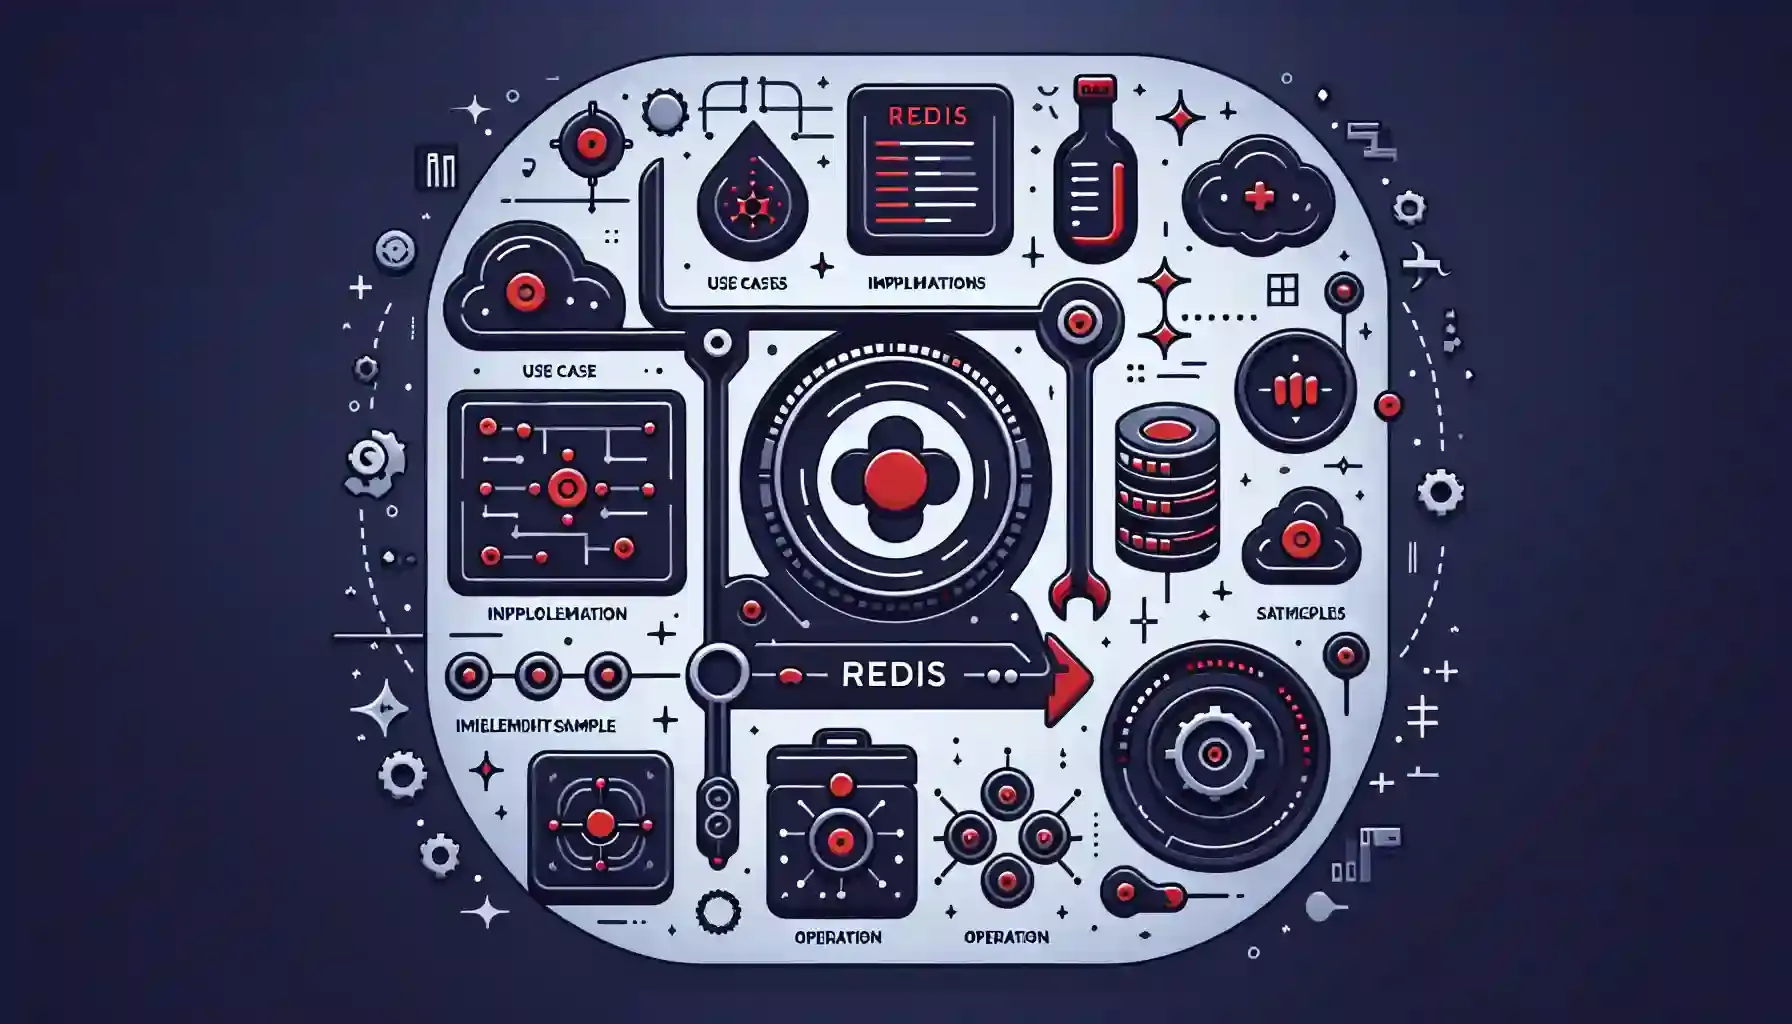 Redisは高速で柔軟性の高いインメモリデータストアです。このガイドでは、Railsアプリケーションにおけるキャッシュ、セッション管理、リアルタイムデータ処理などのユースケースを実装例とともに解説します。また、Redisのアーキテクチャや運用のポイントについても触れ、開発者がRedisを効果的に活用するための知識を提供します。